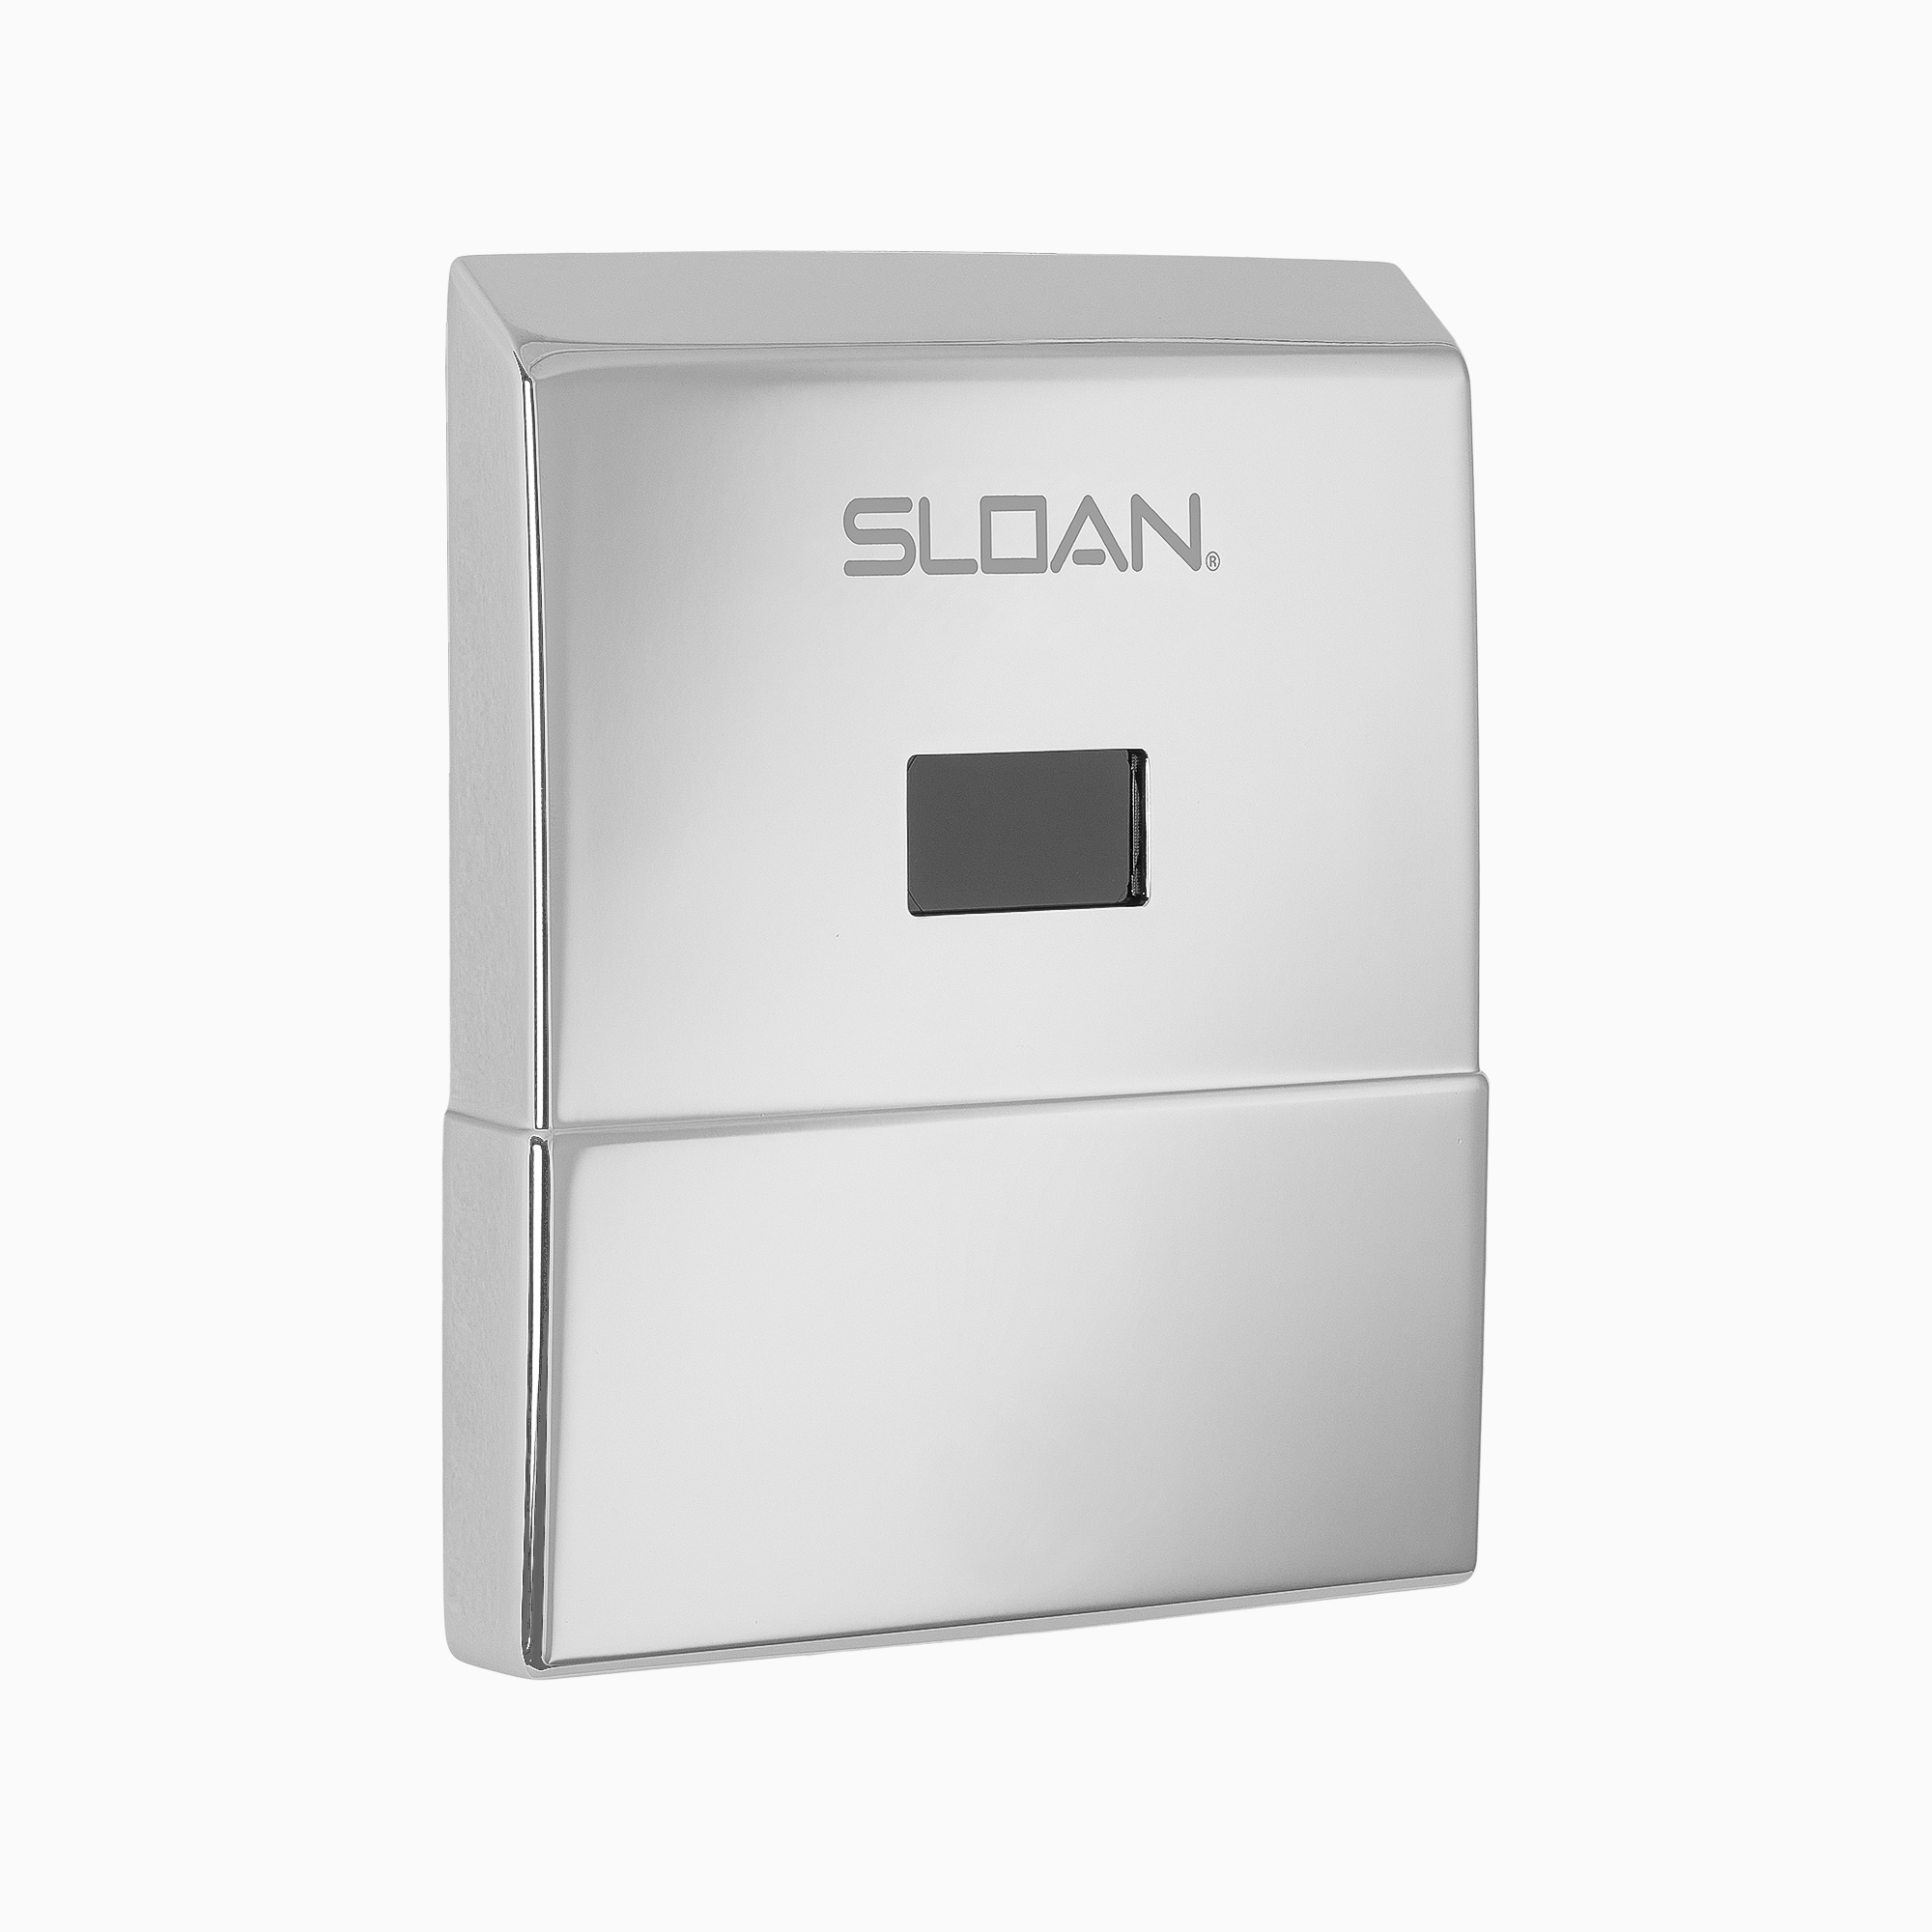 EL-635-A / 3305107 | Sloan